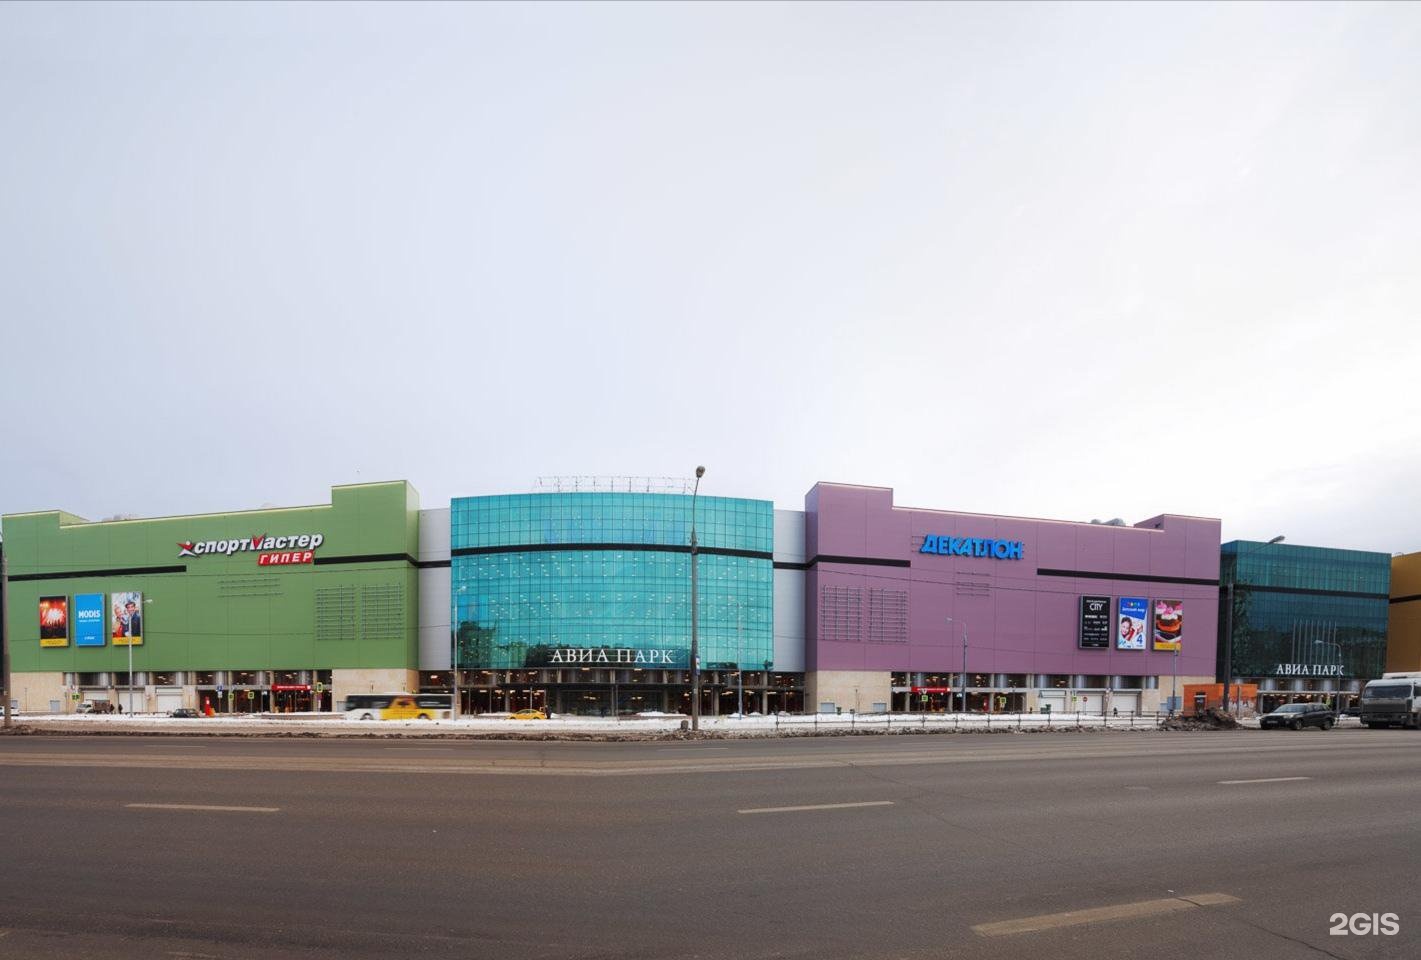 фото торгового центра в москве